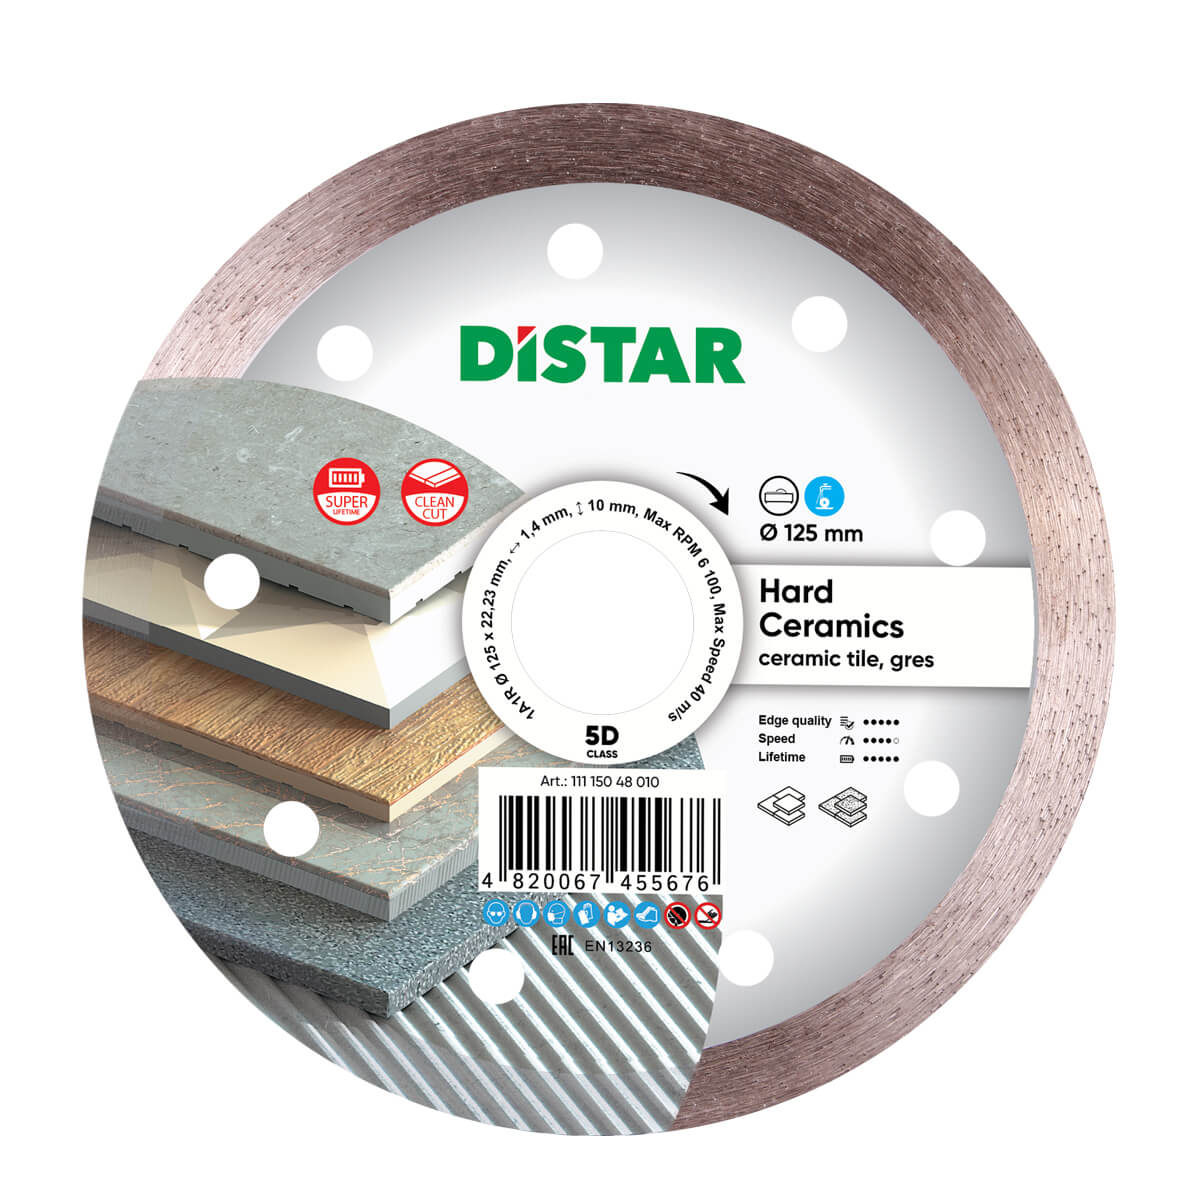 Диск алмазный отрезной по керамограниту и керамике для УШМ Distar 125 мм Hard ceramics 5D диск алмазный отрезной по керамике и керамограниту distar 1a1r 250 мм hard ceramics 5d